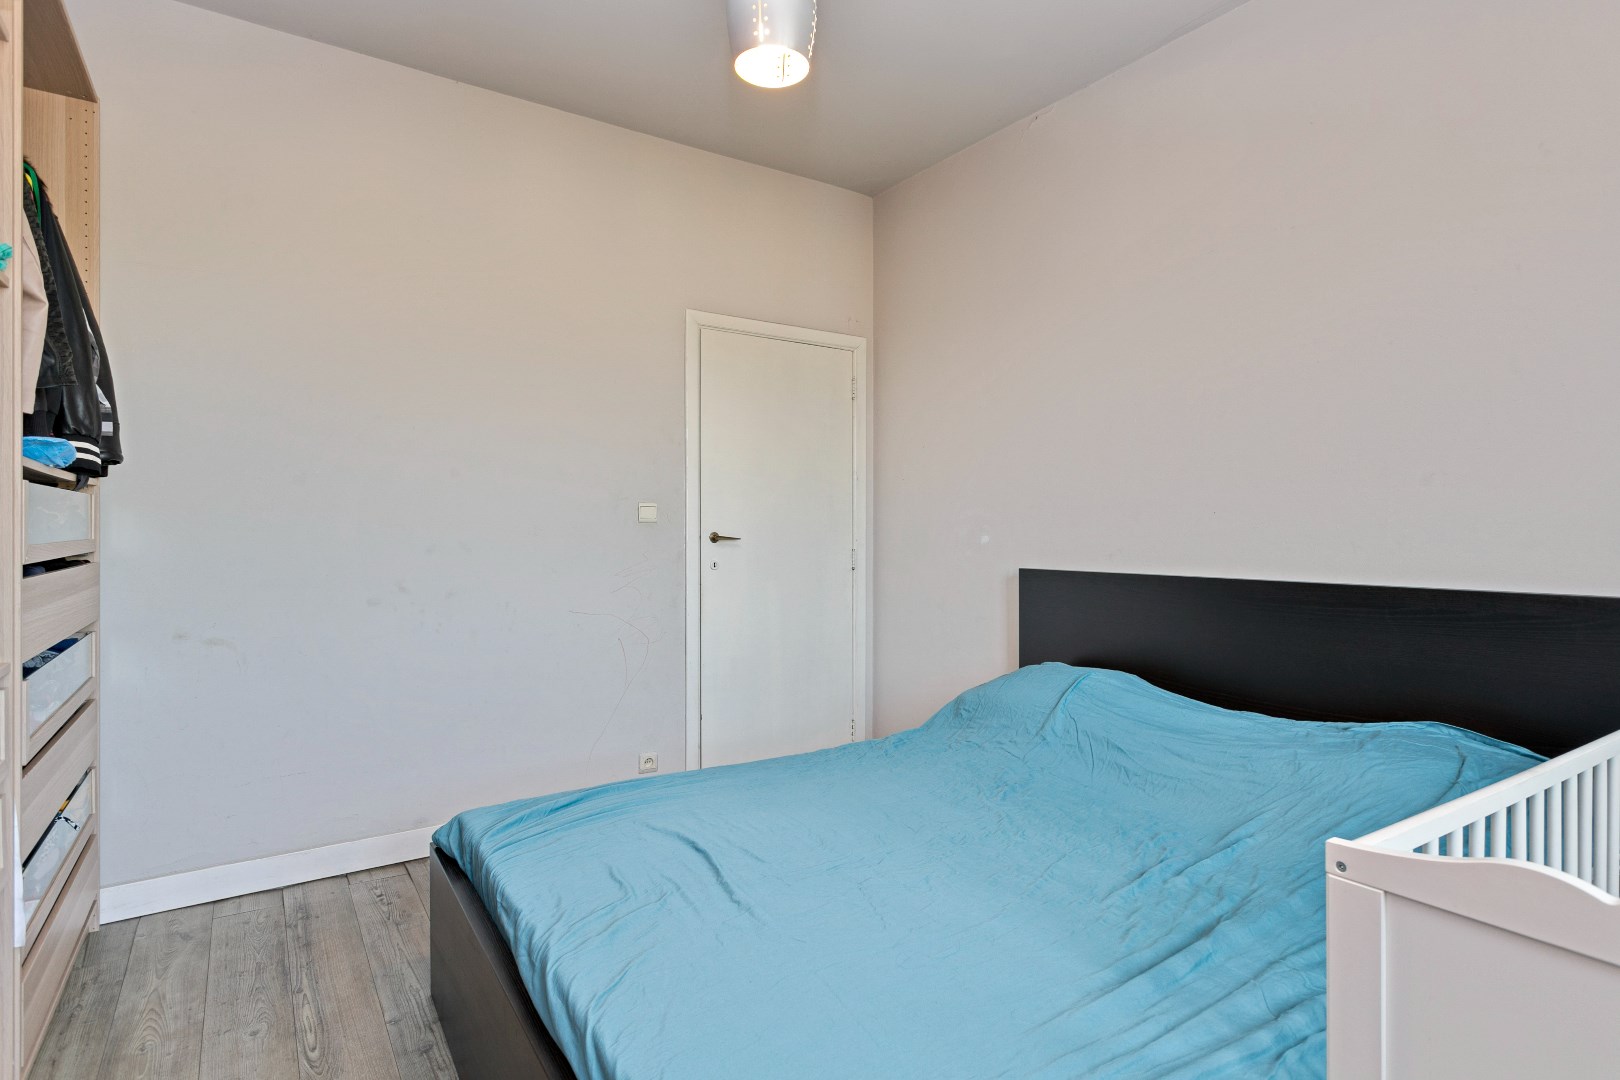 Appartement met twee slaapkamers te Mechelen 